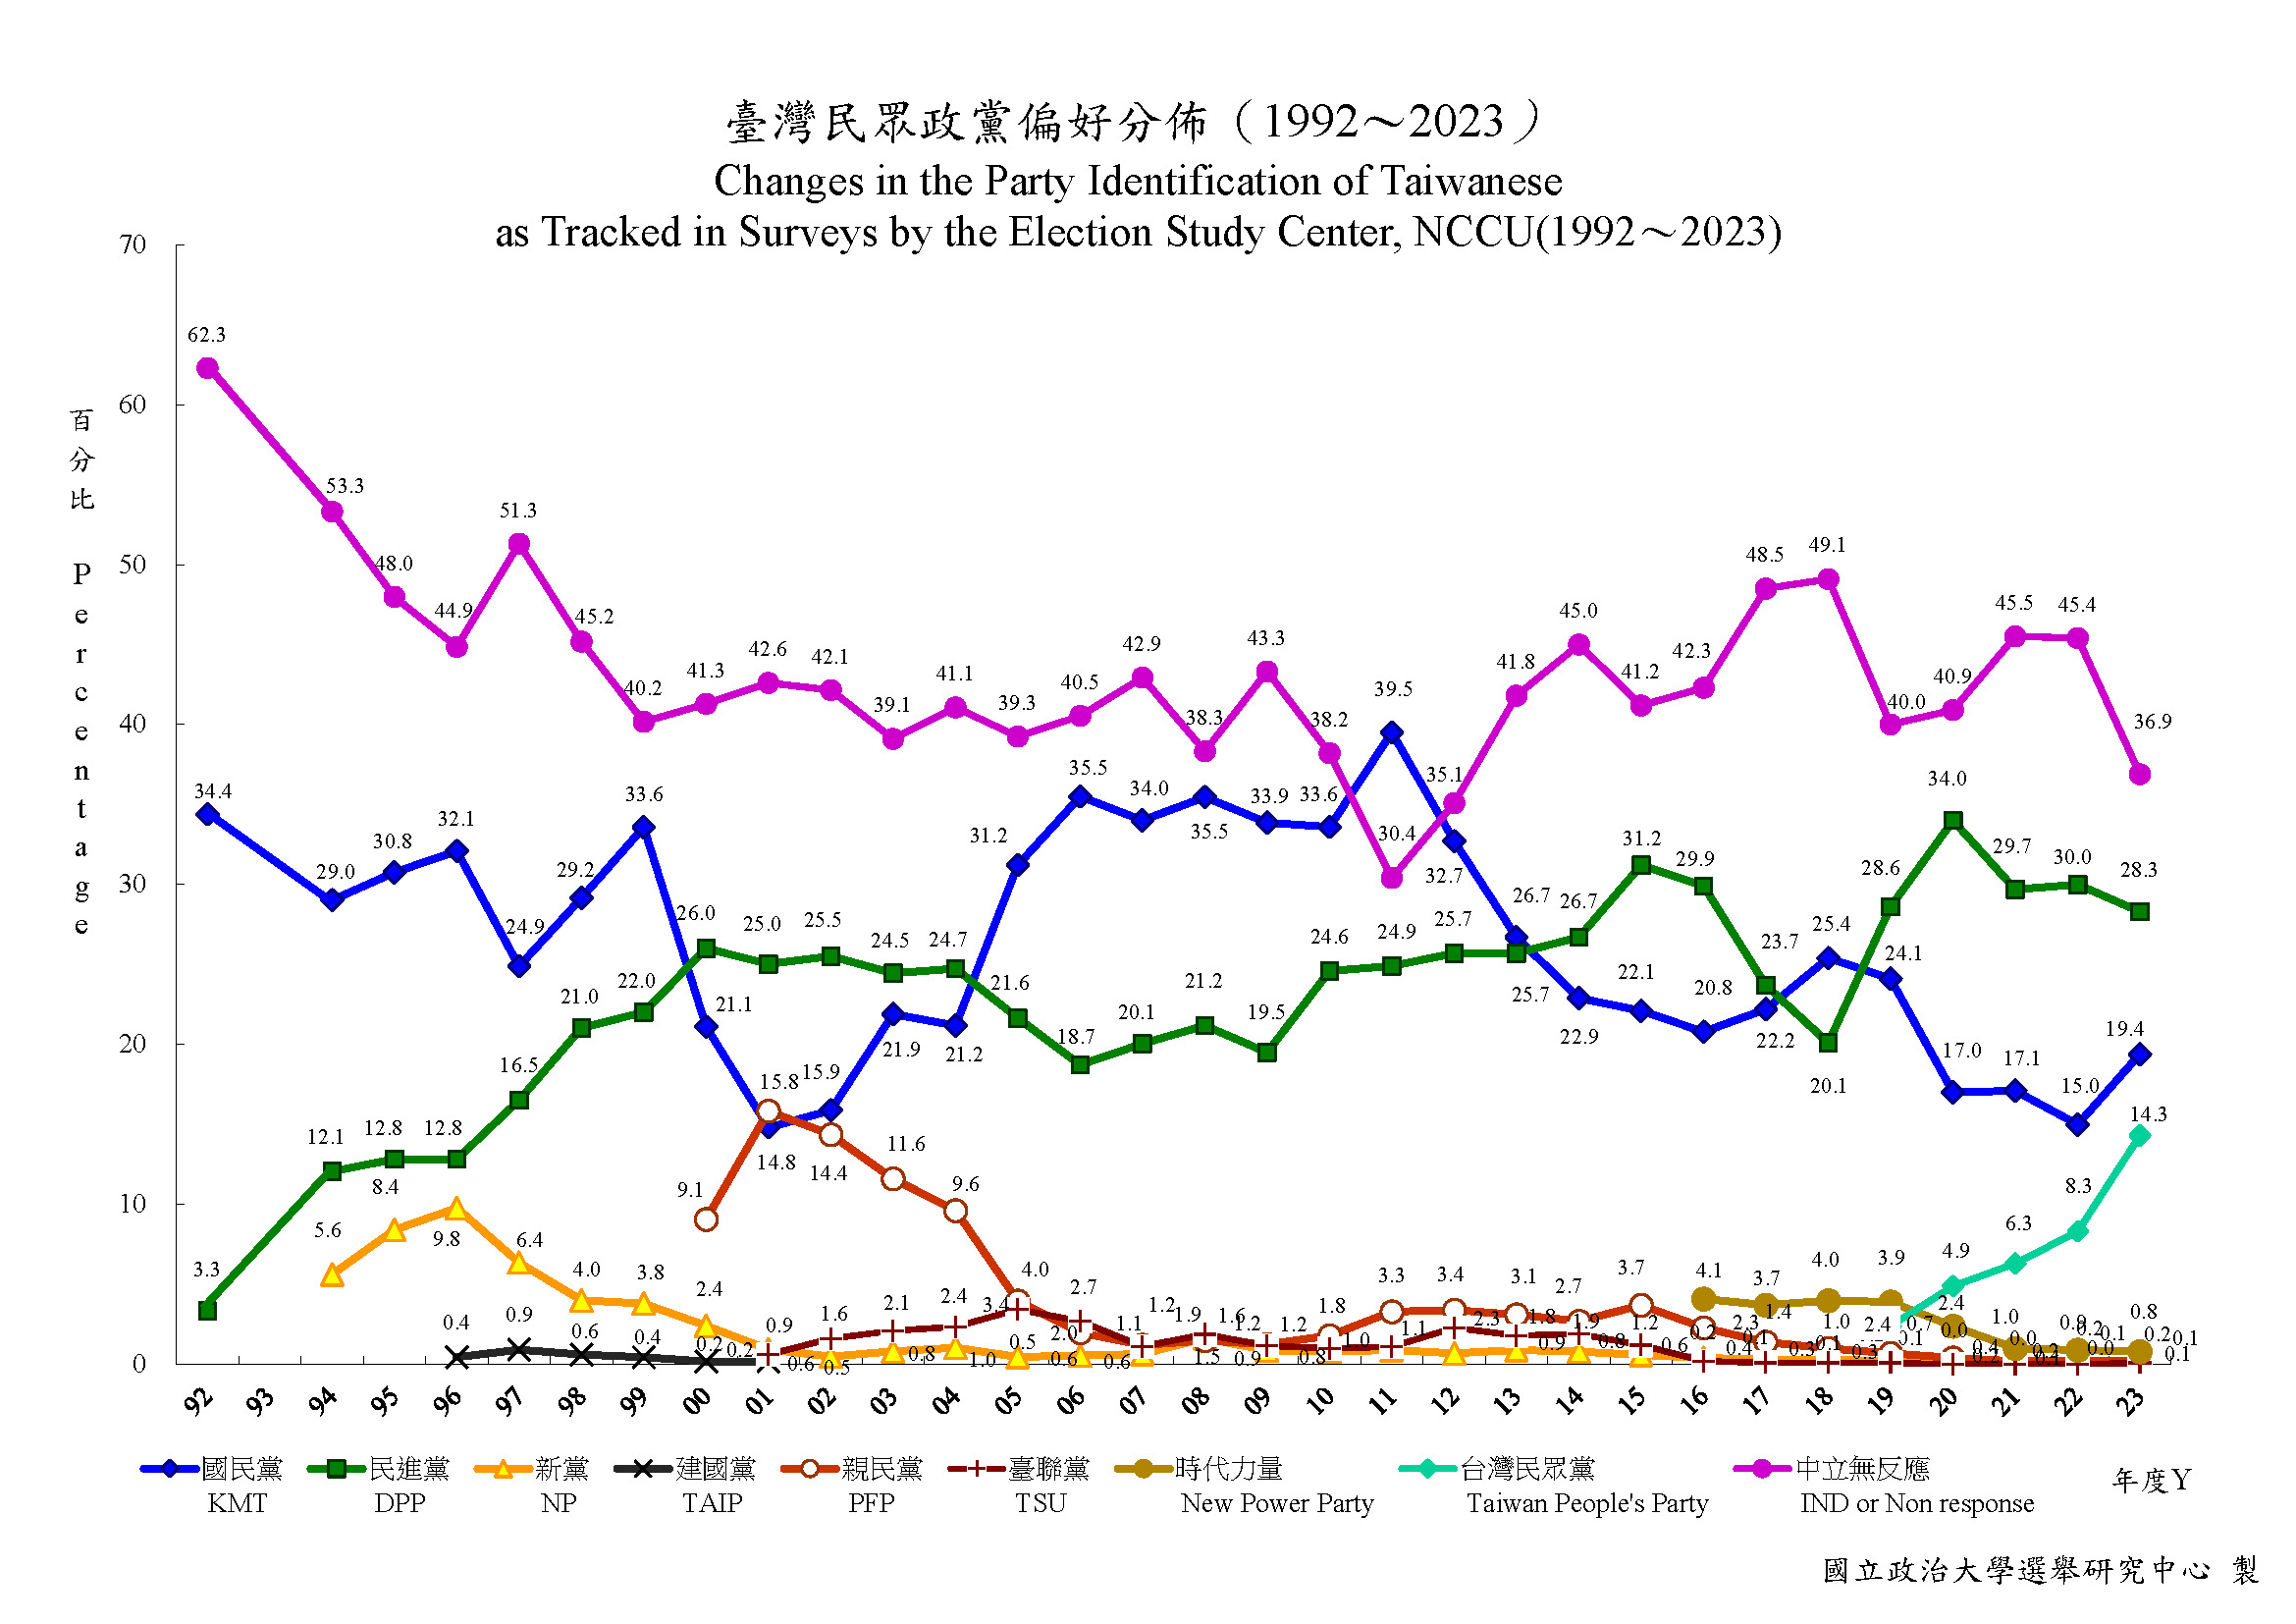 臺灣民眾政黨偏好趨勢分佈(1992年06月~2023年12月)